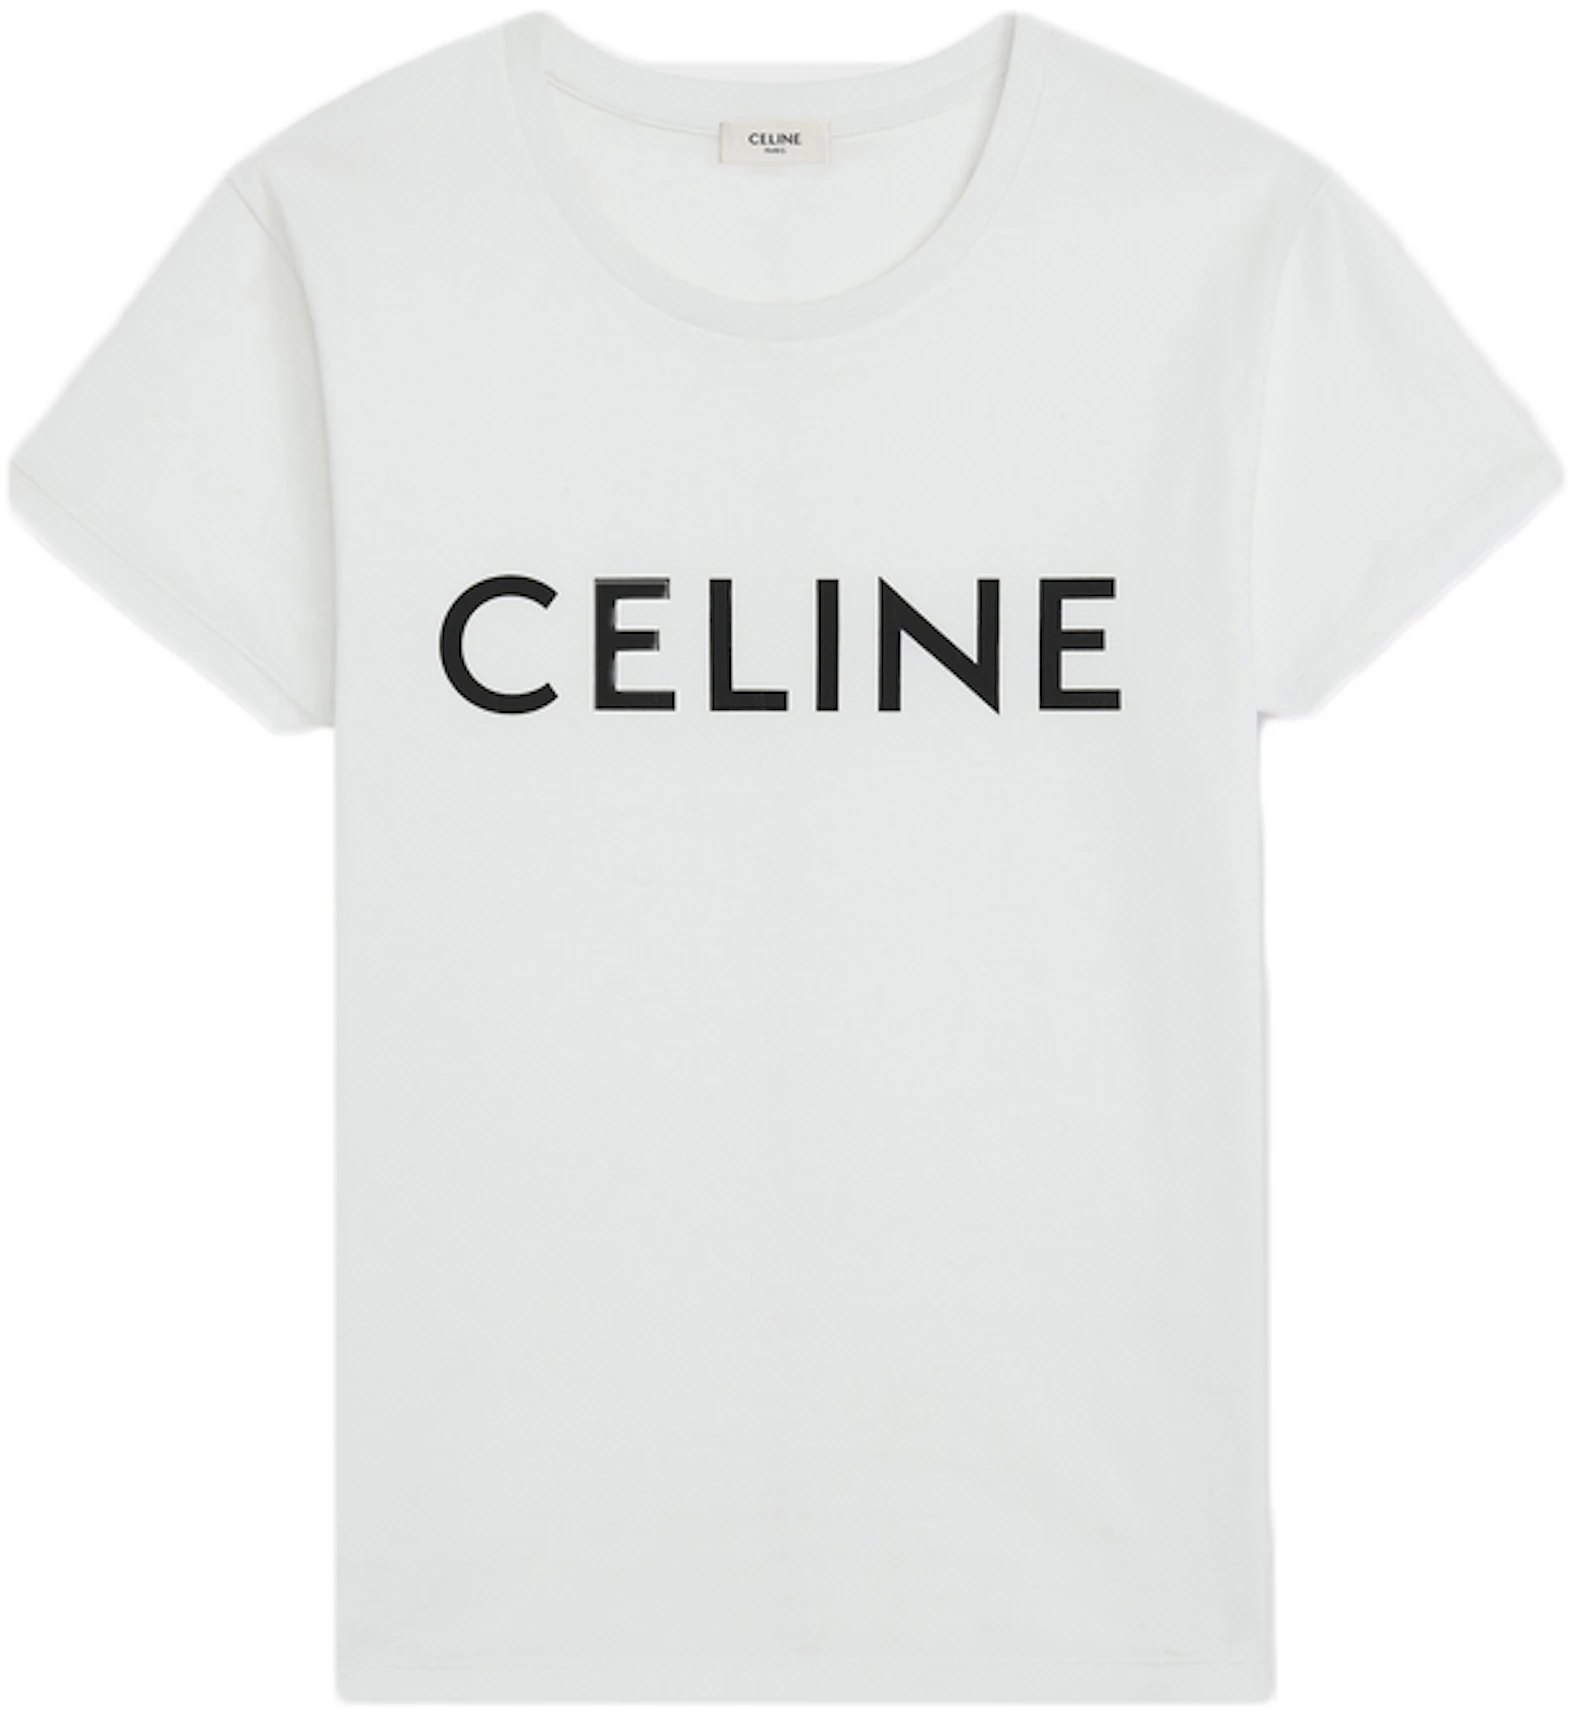 Celine Cotton T-shirt White/Black - DE